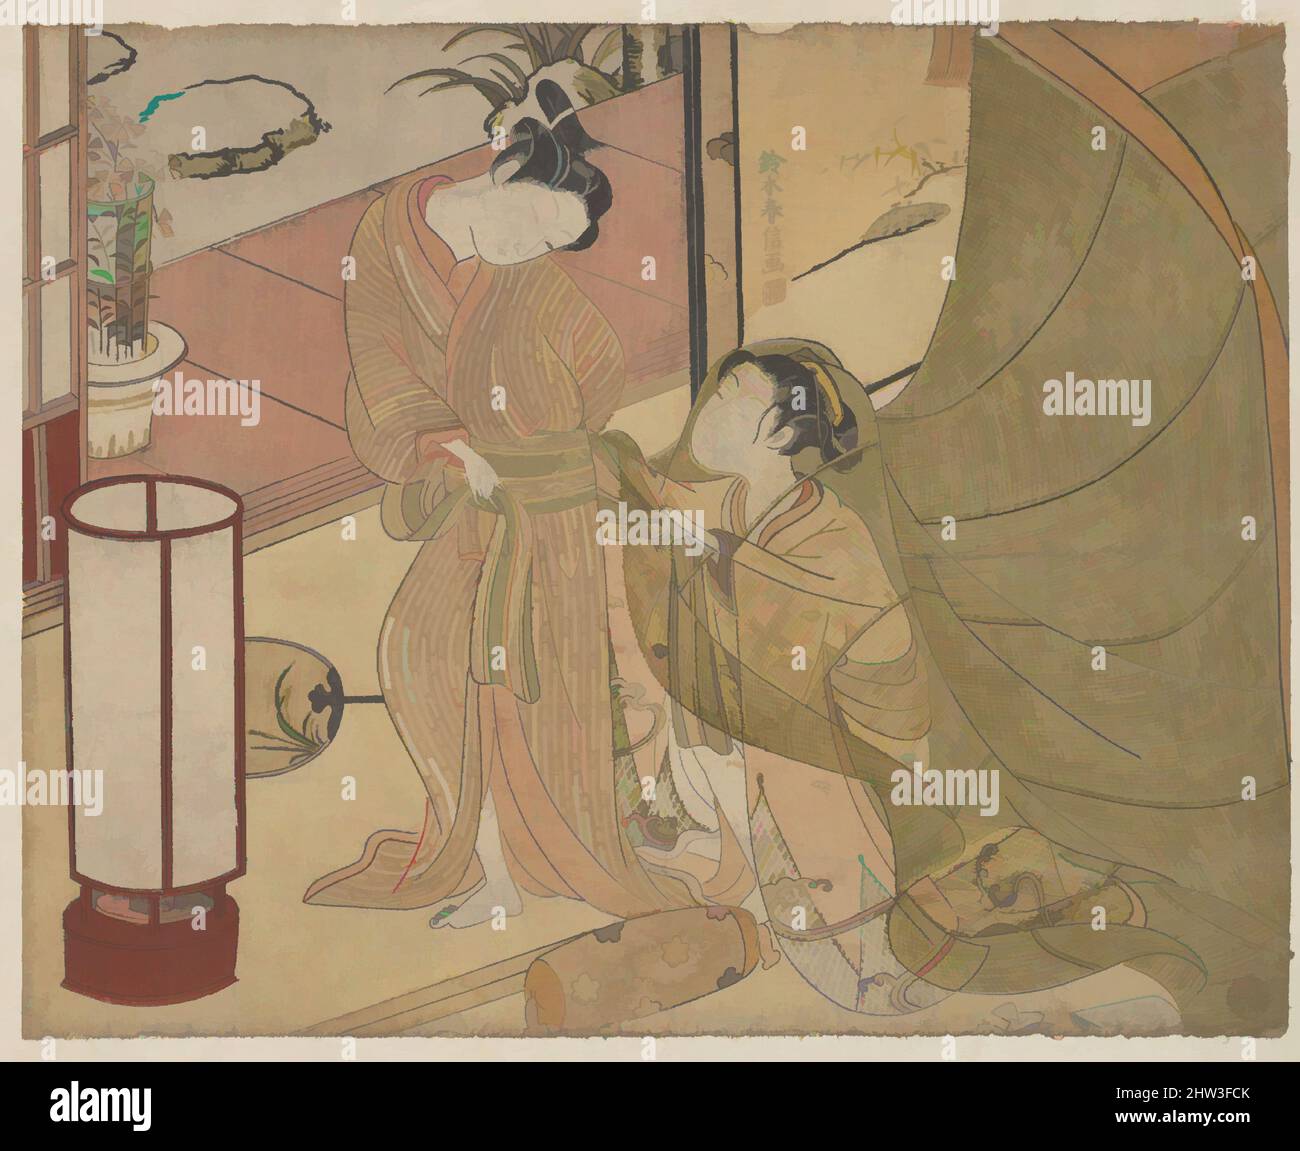 Art inspiré par les rechignements, période Edo (1615–1868), fin 1760s, Japon, imprimé polychrome sur bois; Encre et couleur sur papier, H. 7 11/16 po. (19,5 cm) ; avec 9 9/16 po (24,3 cm), Prints, Suzuki Harunobu (japonais, 1725–1770), l'application d'une couleur par rapport à une autre accrue, oeuvres classiques modernisées par Artotop avec un peu de modernité. Formes, couleur et valeur, impact visuel accrocheur sur l'art émotions par la liberté d'œuvres d'art d'une manière contemporaine. Un message intemporel qui cherche une nouvelle direction créative. Artistes qui se tournent vers le support numérique et créent le NFT Artotop Banque D'Images